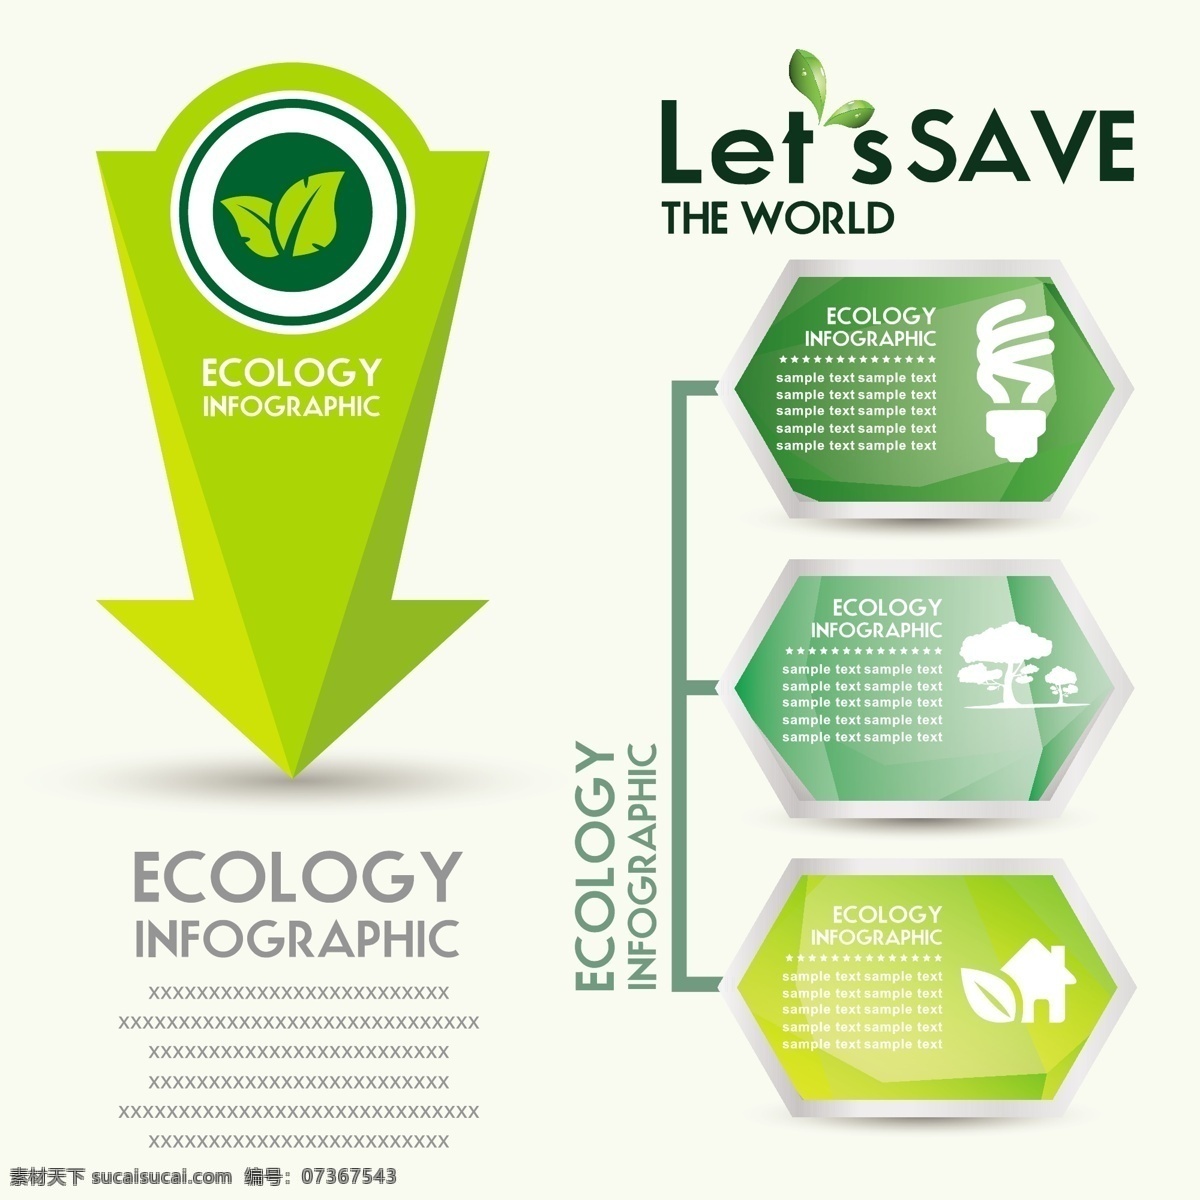 生态信息图表 环保 创意设计 eco 箭头 循环 能源 节能 低碳 生态 回收 环保标志 ppt素材 底纹背景 商务金融 商业插画 白色